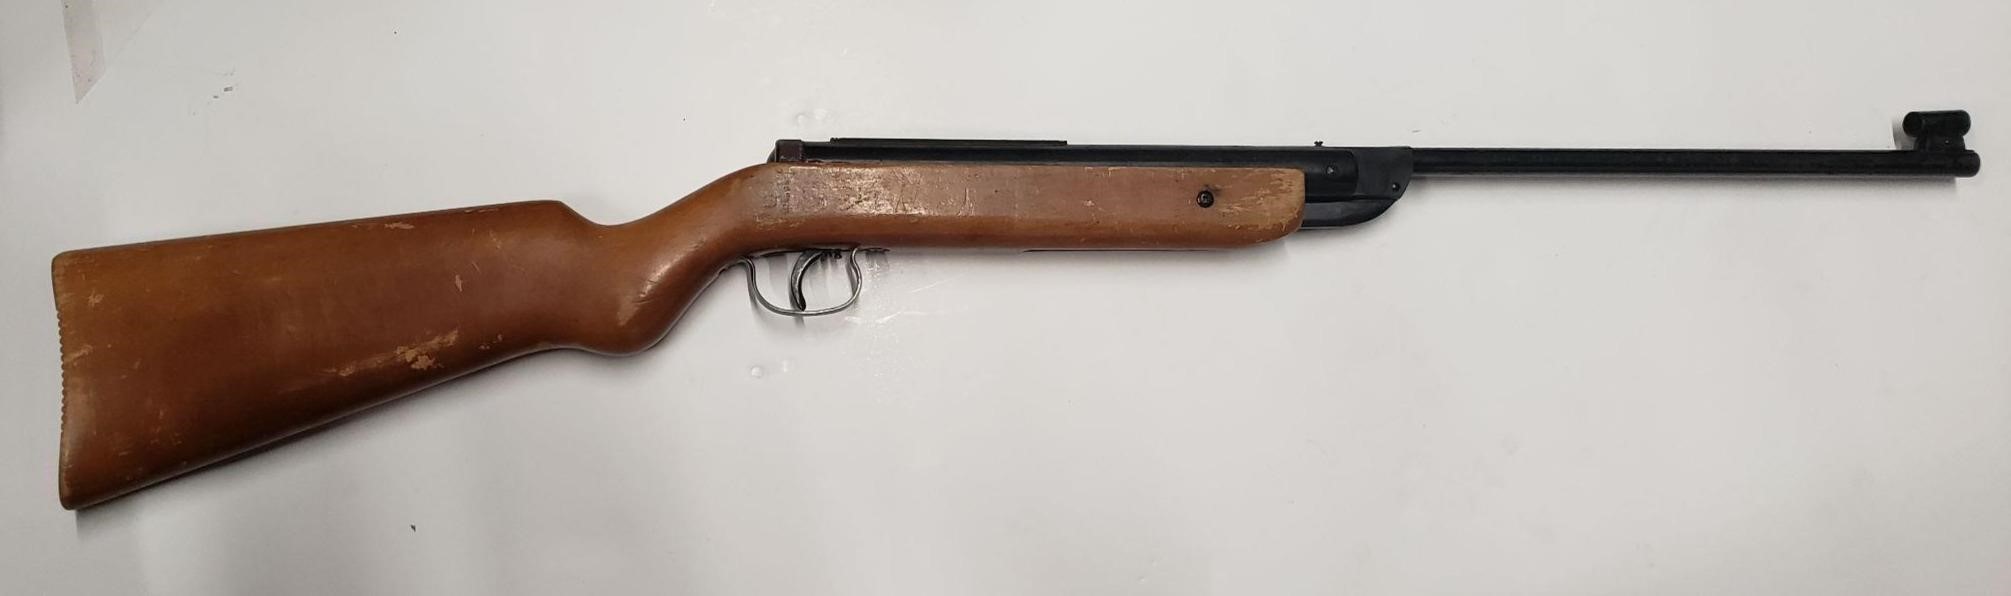 Winchester MOD425 22 Air Rifle